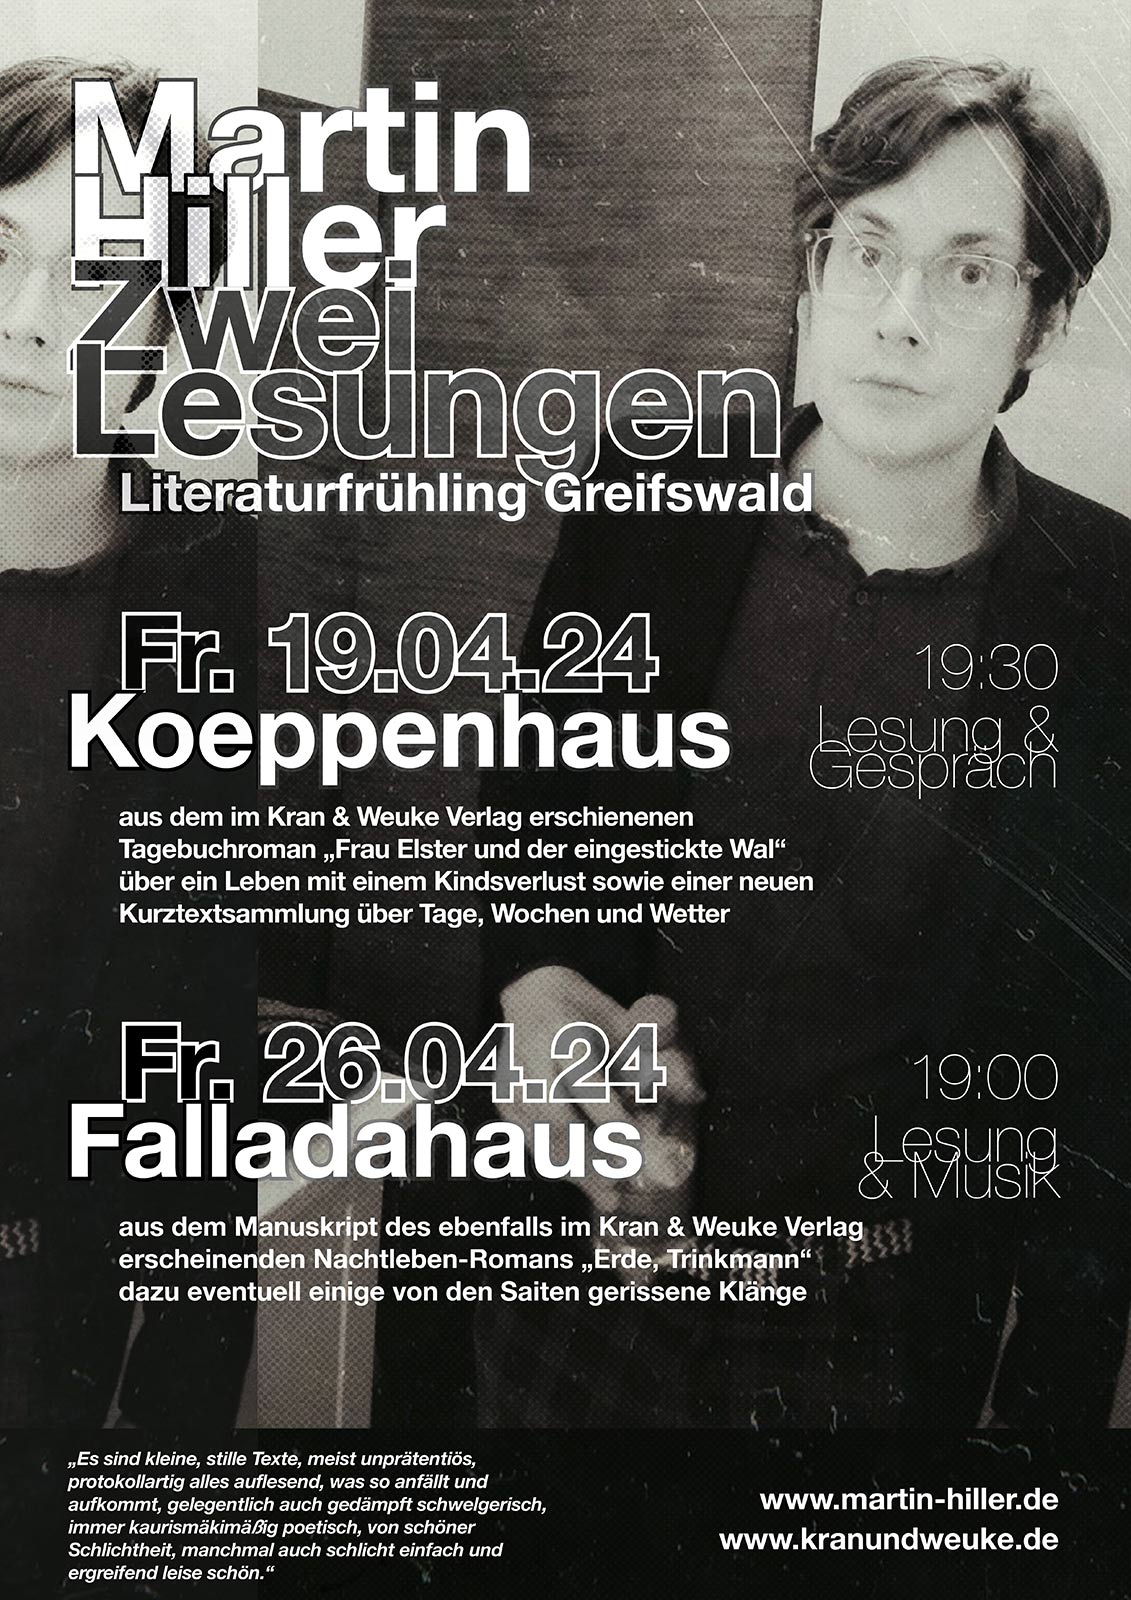 Plakat für zwei Lesungen von Martin Hiller zum Literaturfrühling Greifswald